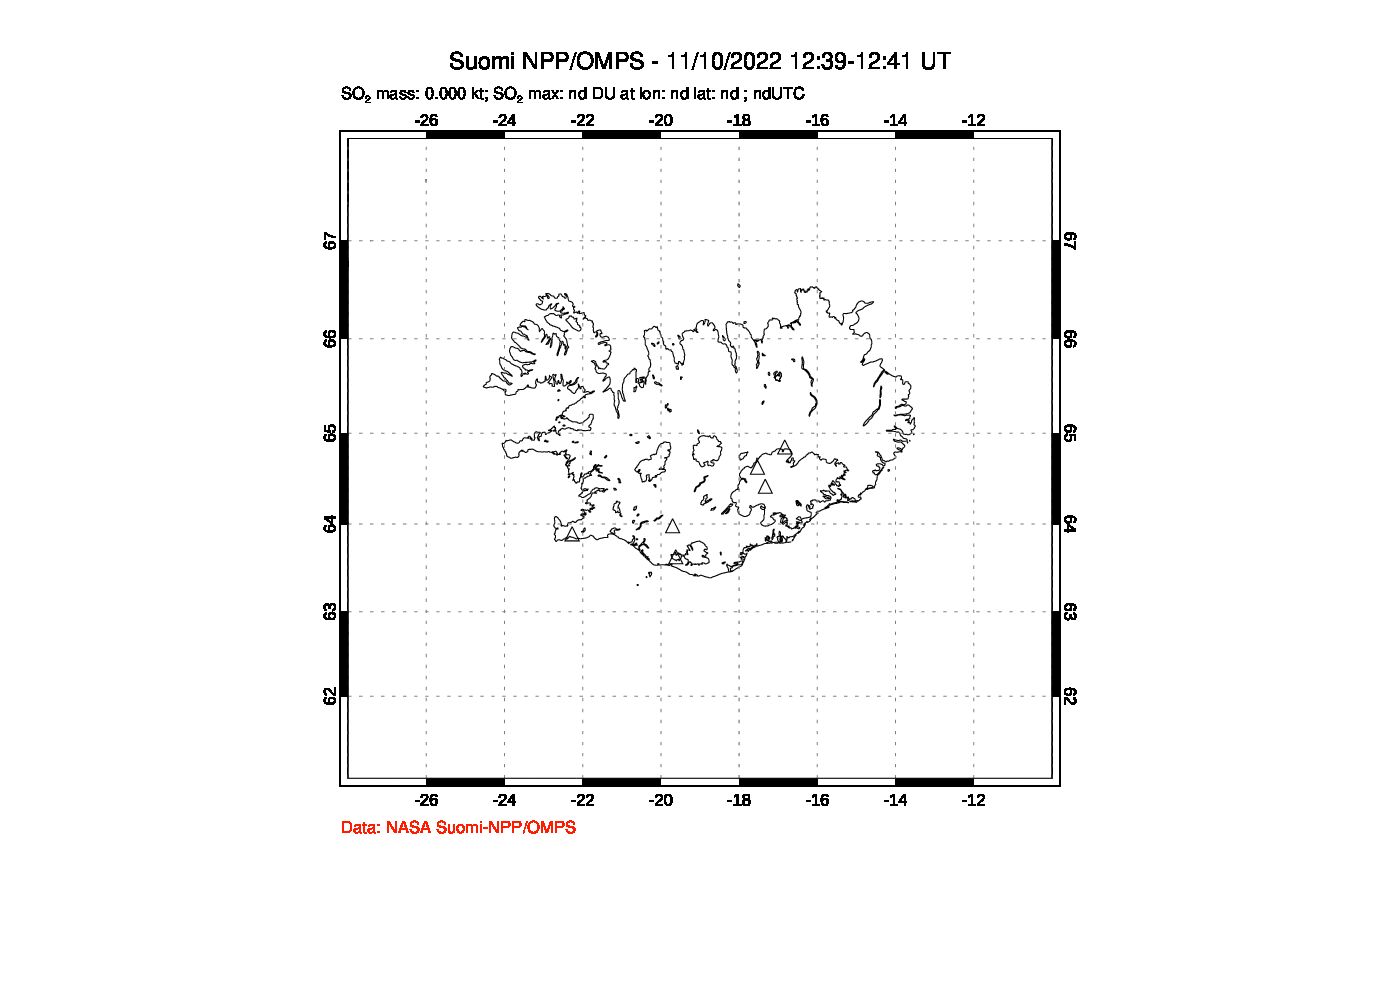 A sulfur dioxide image over Iceland on Nov 10, 2022.